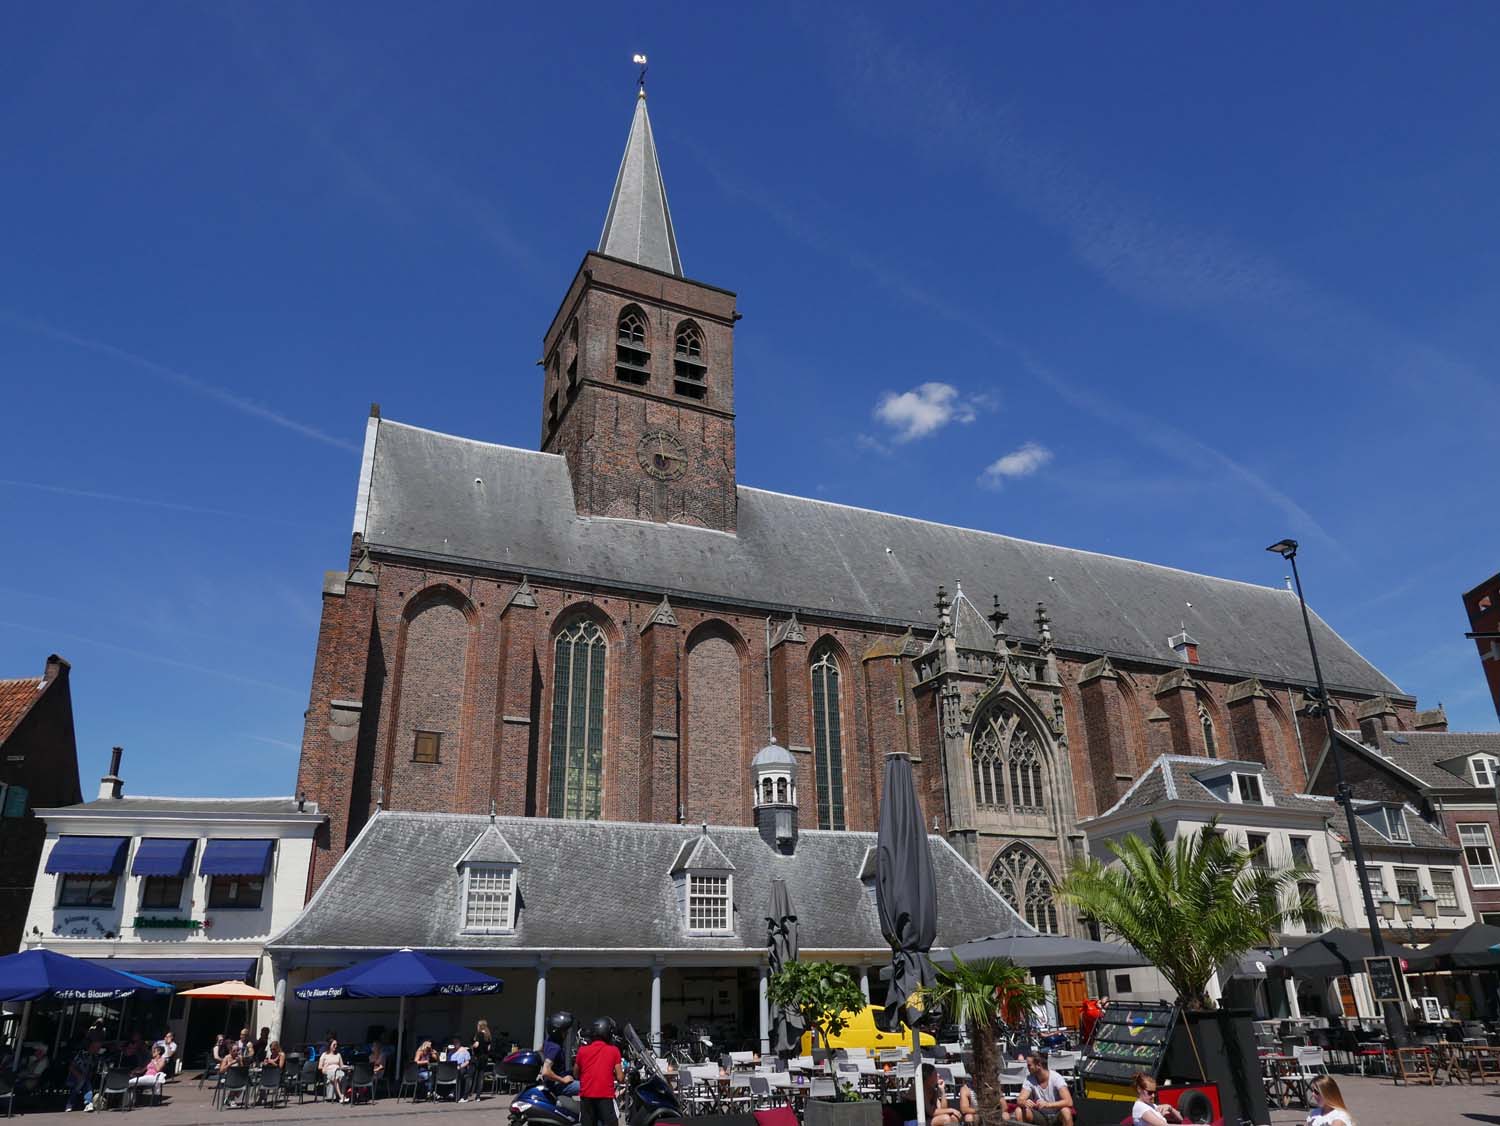 Sint Joriskerk (St. George's Church)